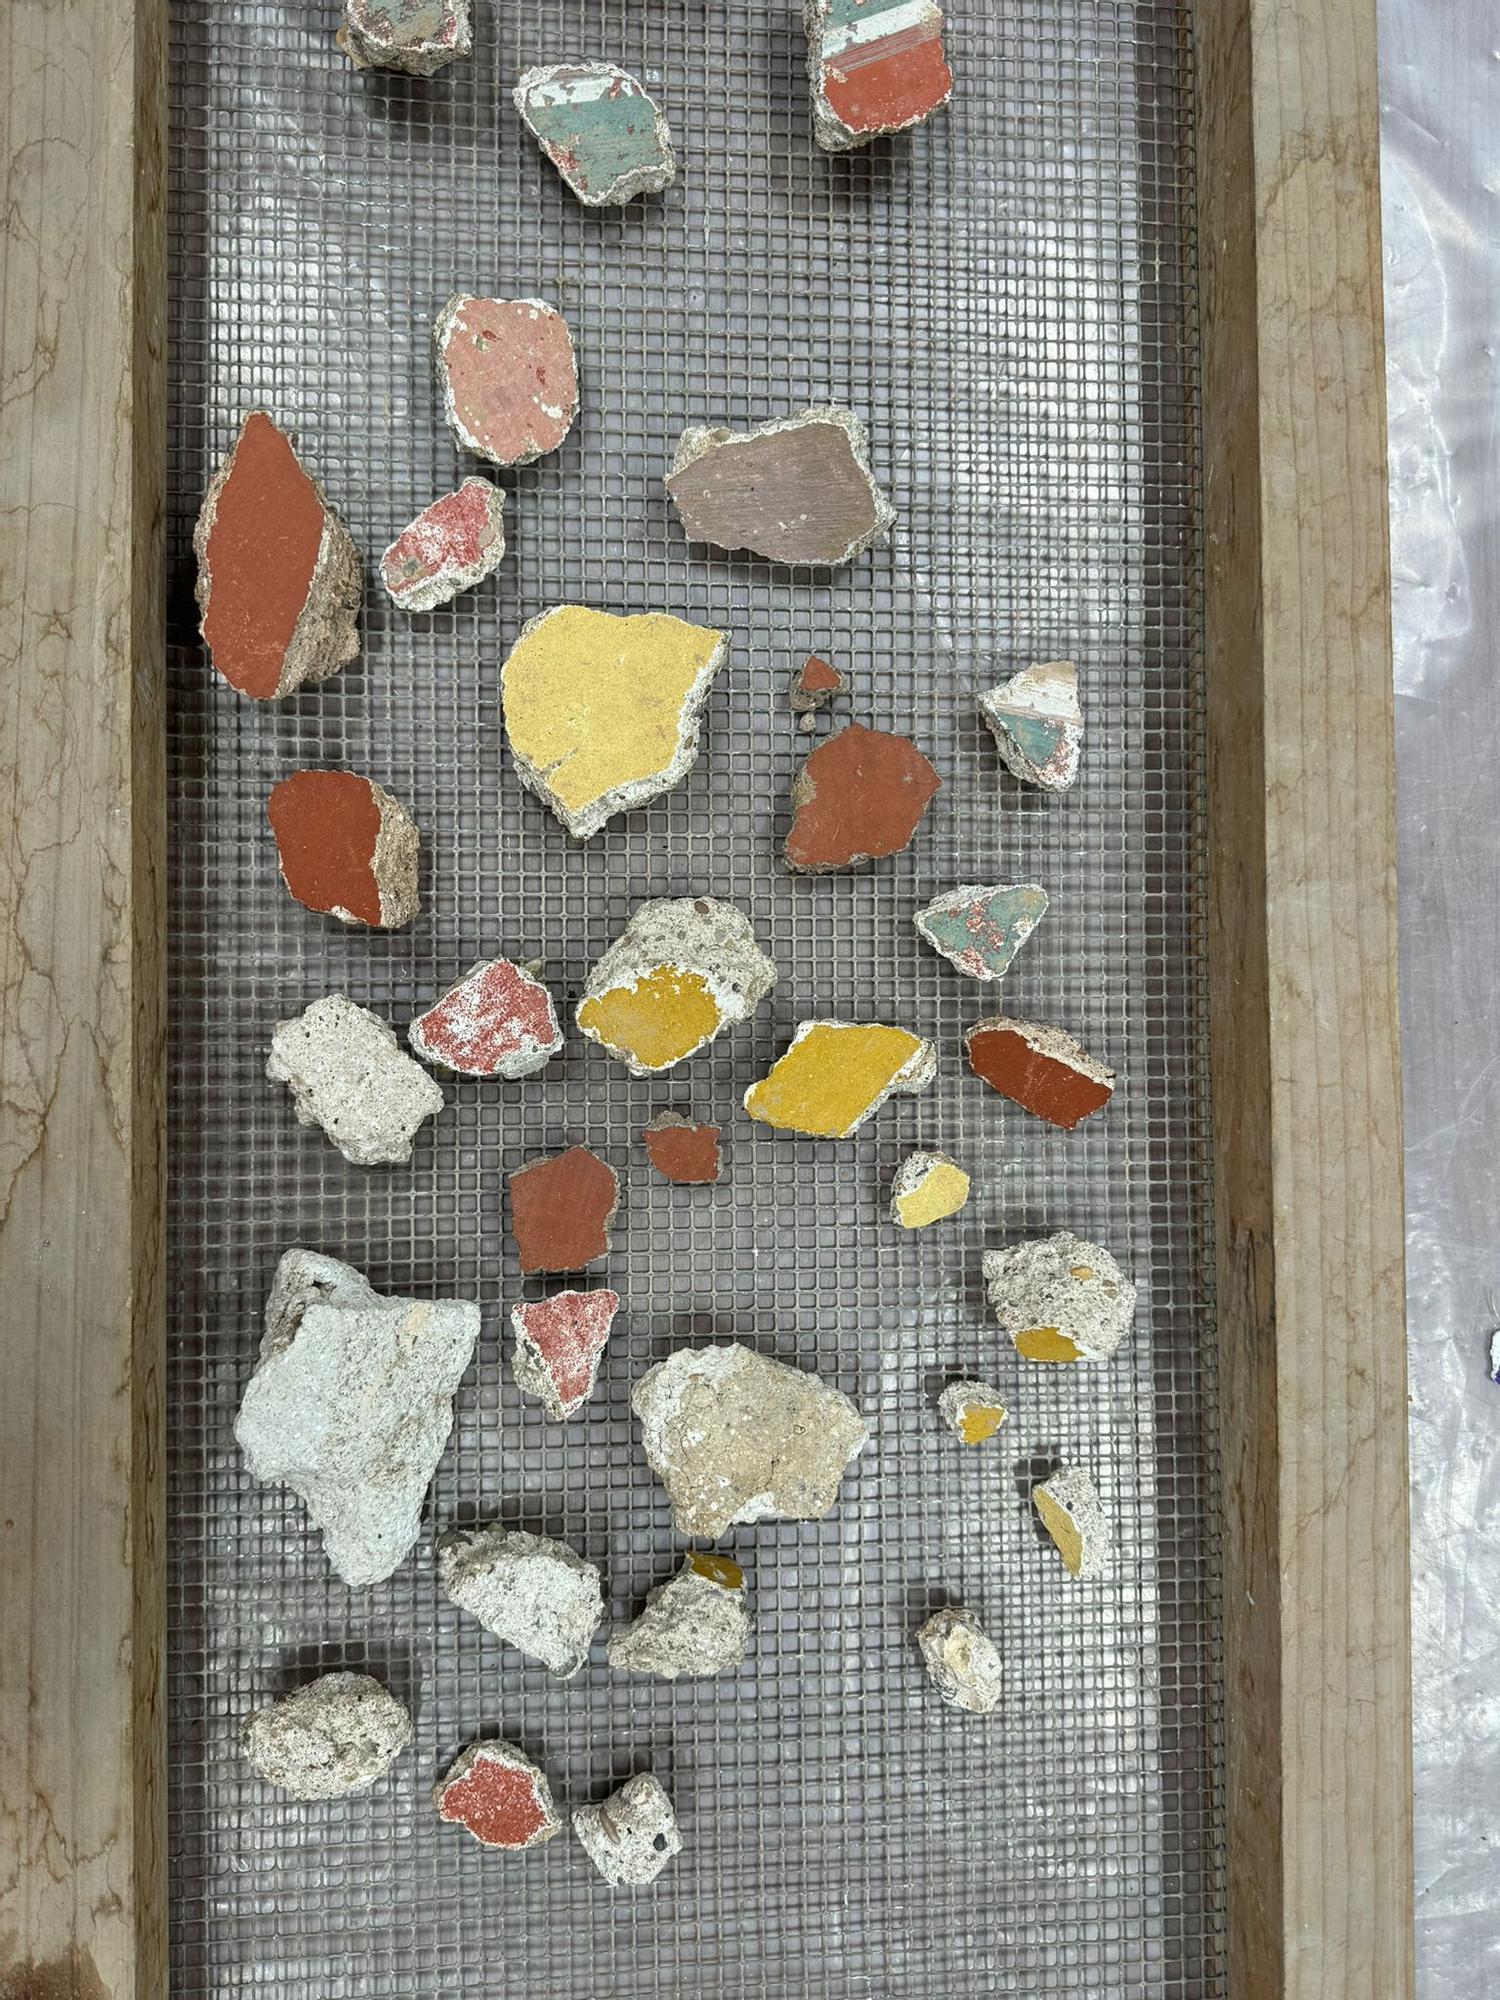 Estos son materiales encontrados bajo la plaza de San Miguel